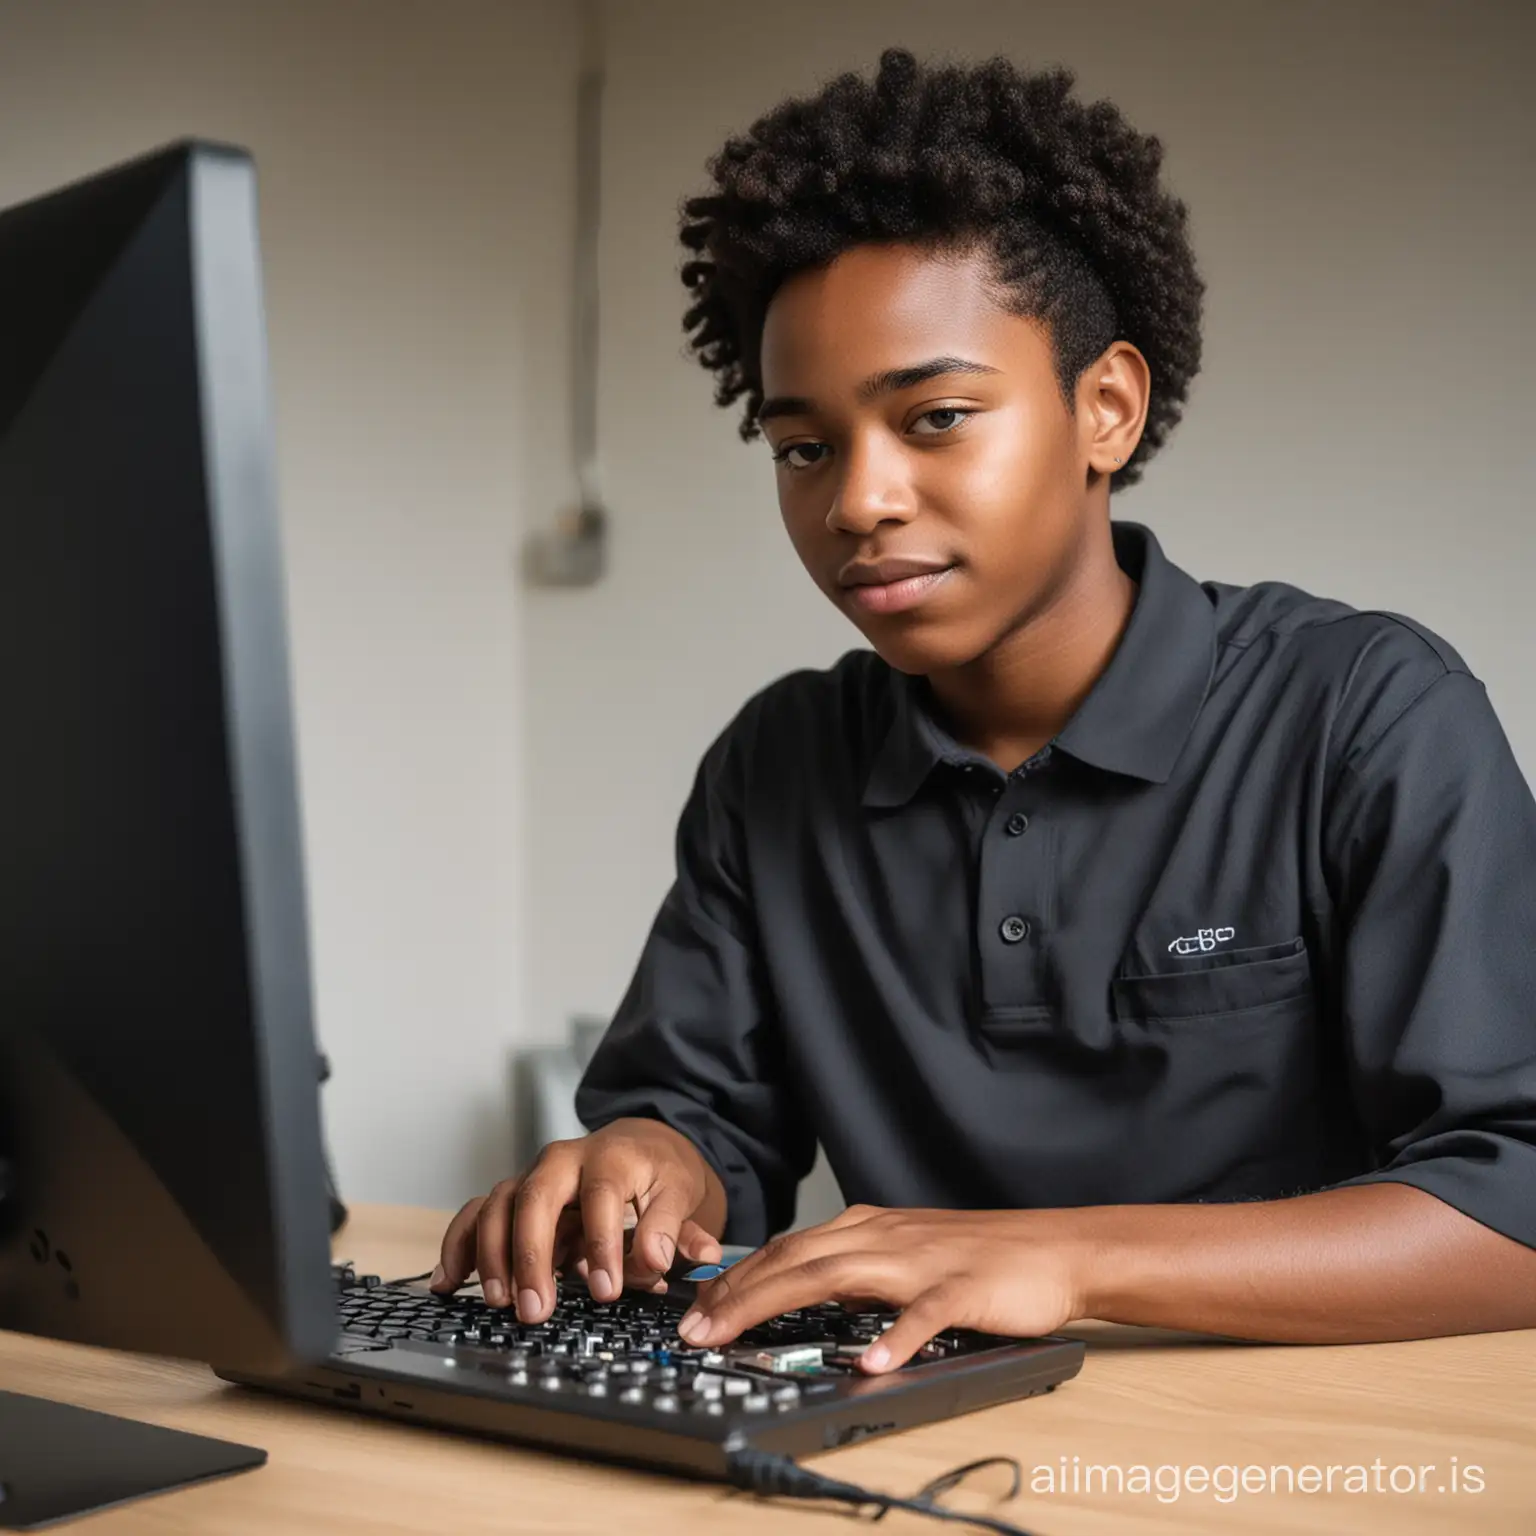 una persona negra joven haciendo un trabajo de tecno